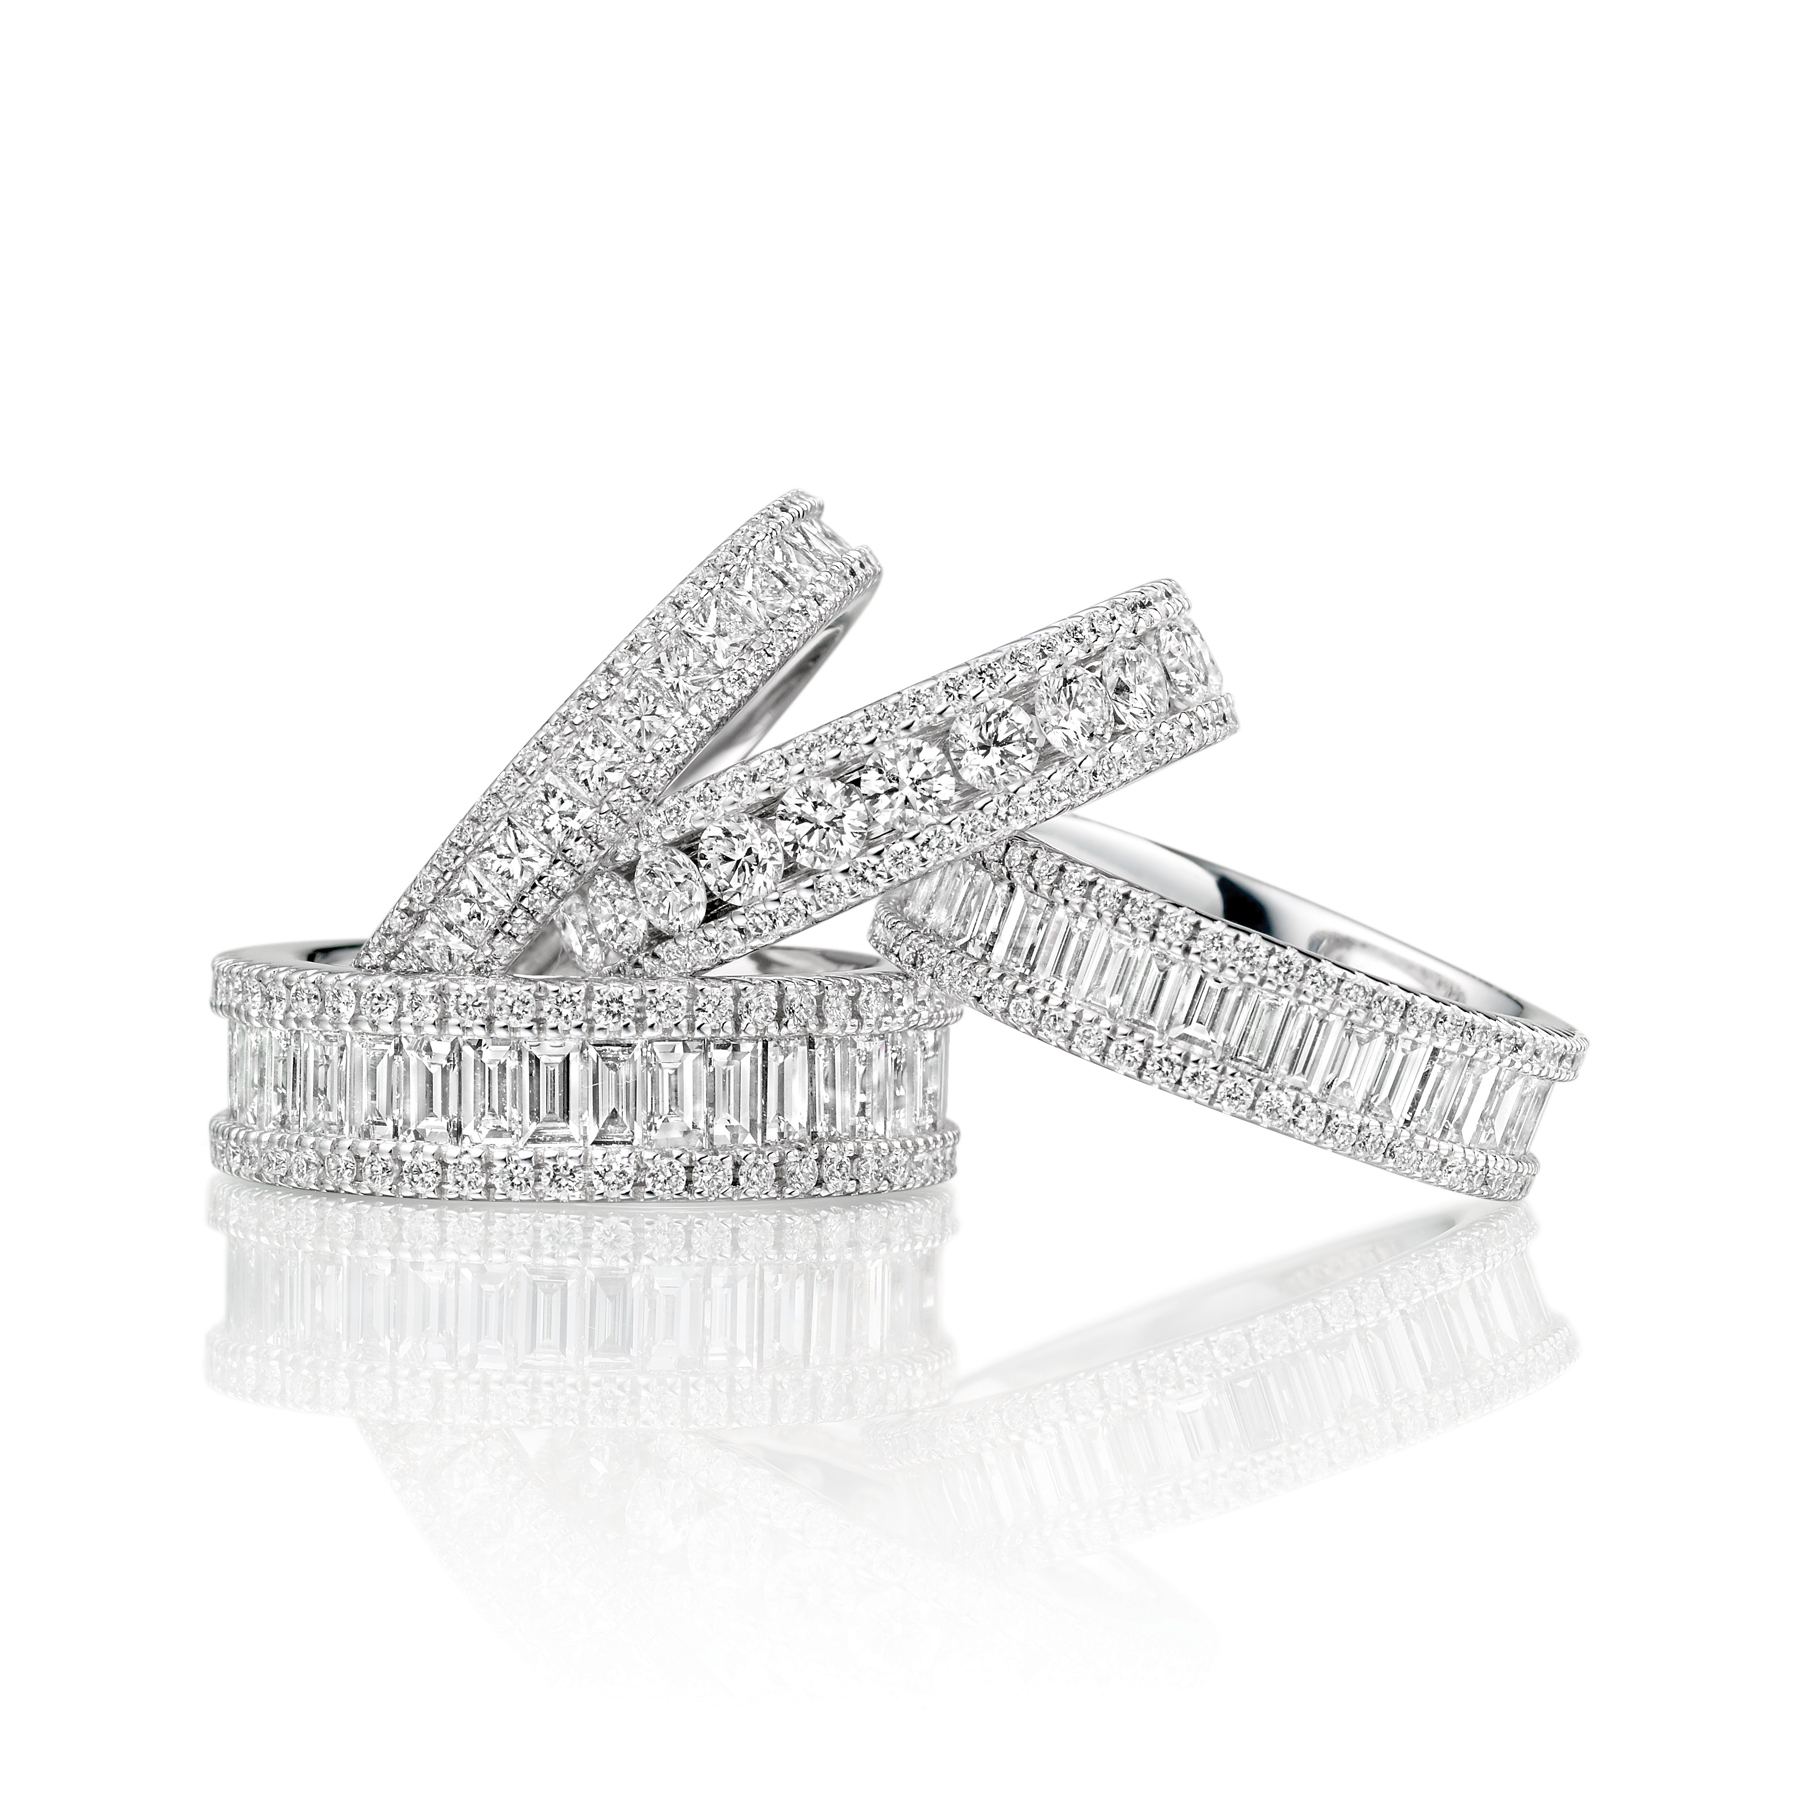 Fancy diamond eternity rings